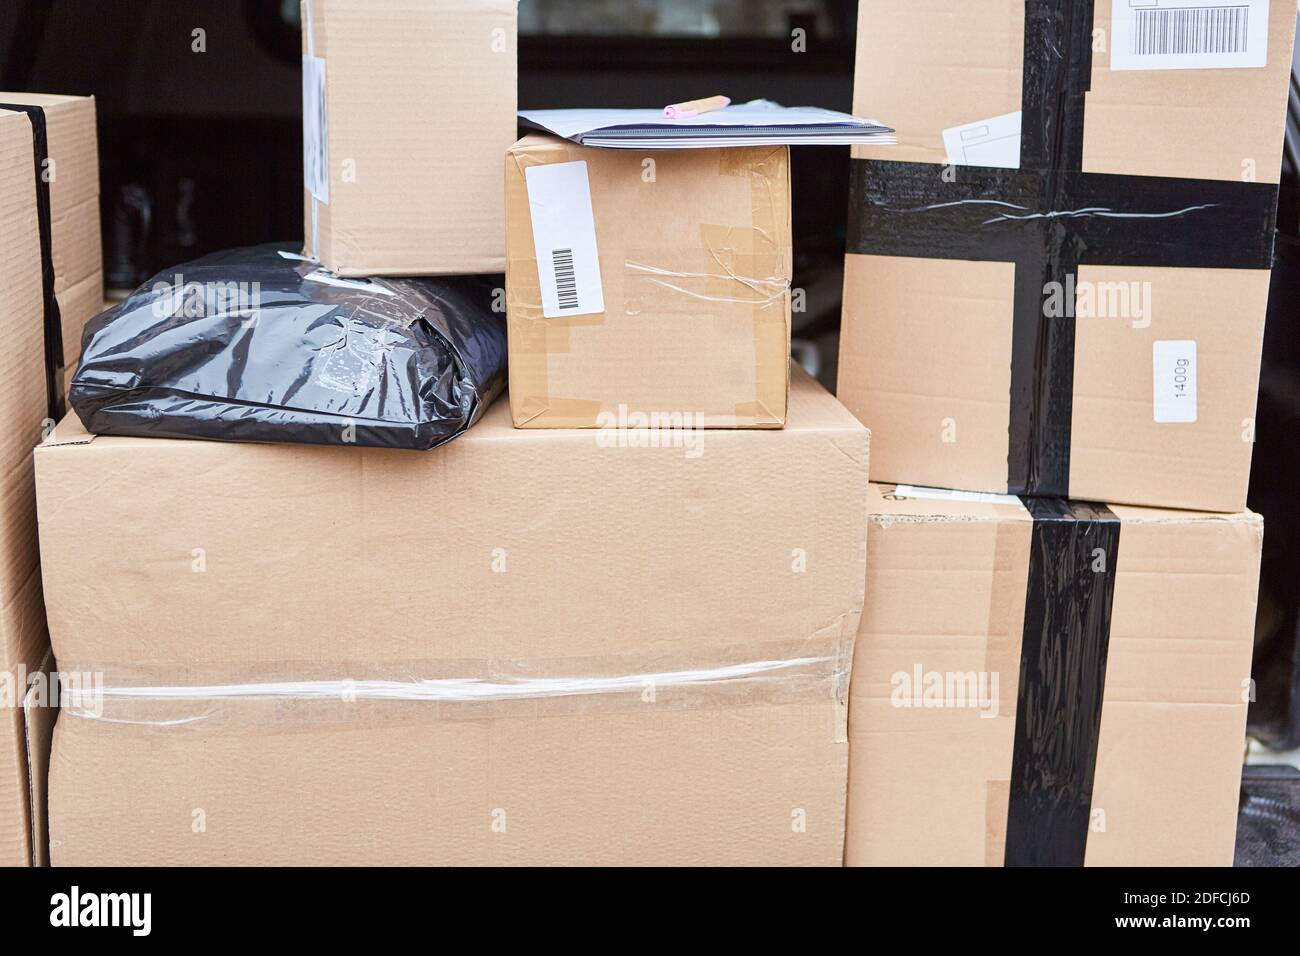 Pakete sind im Laderaum des zur Auslieferung bereit Lieferwagen  Stockfotografie - Alamy